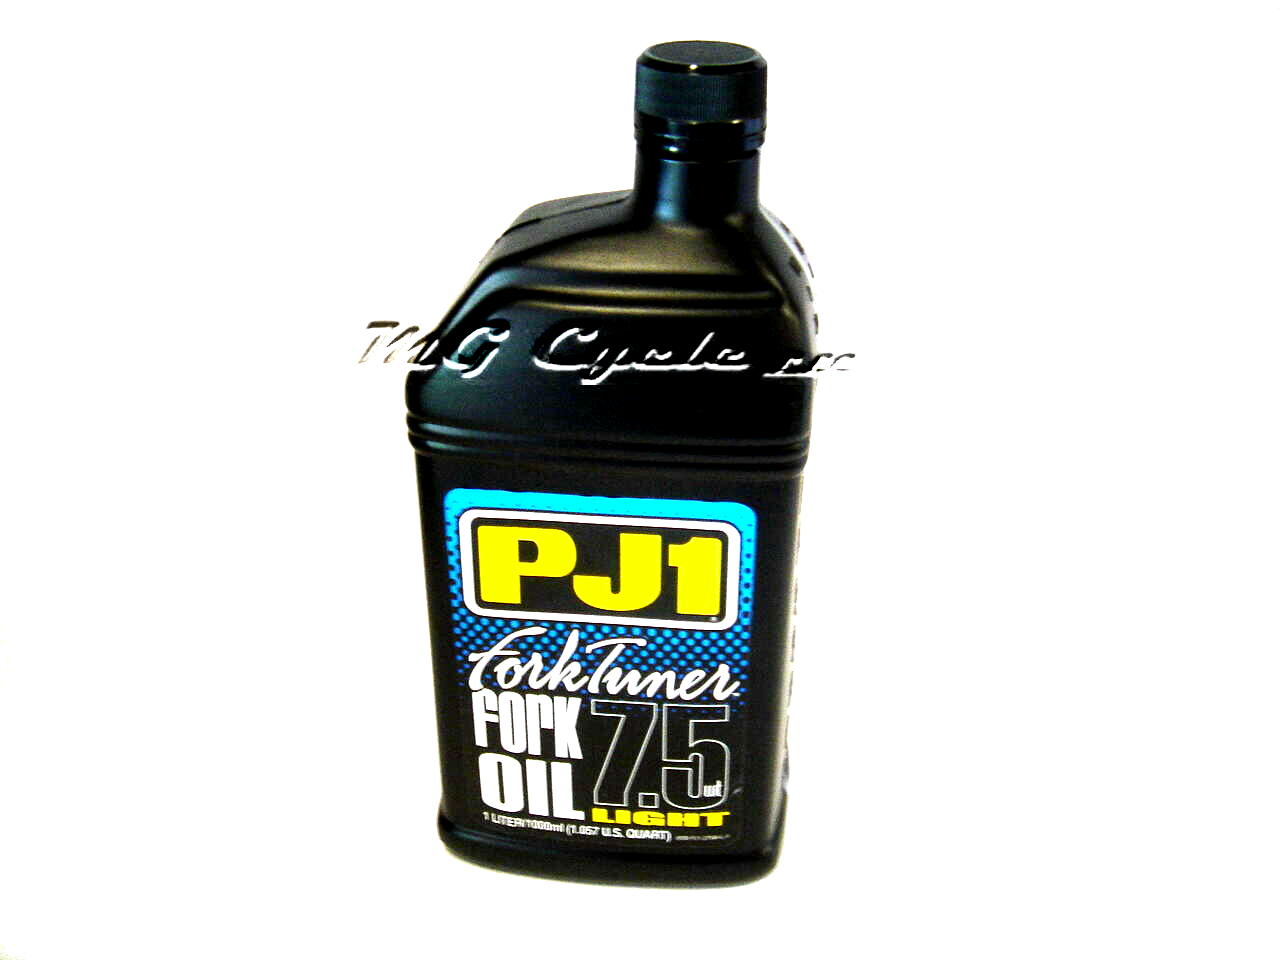 PJ1 Fork Tuner fork oil 7.5W light, 1 liter bottle - Click Image to Close